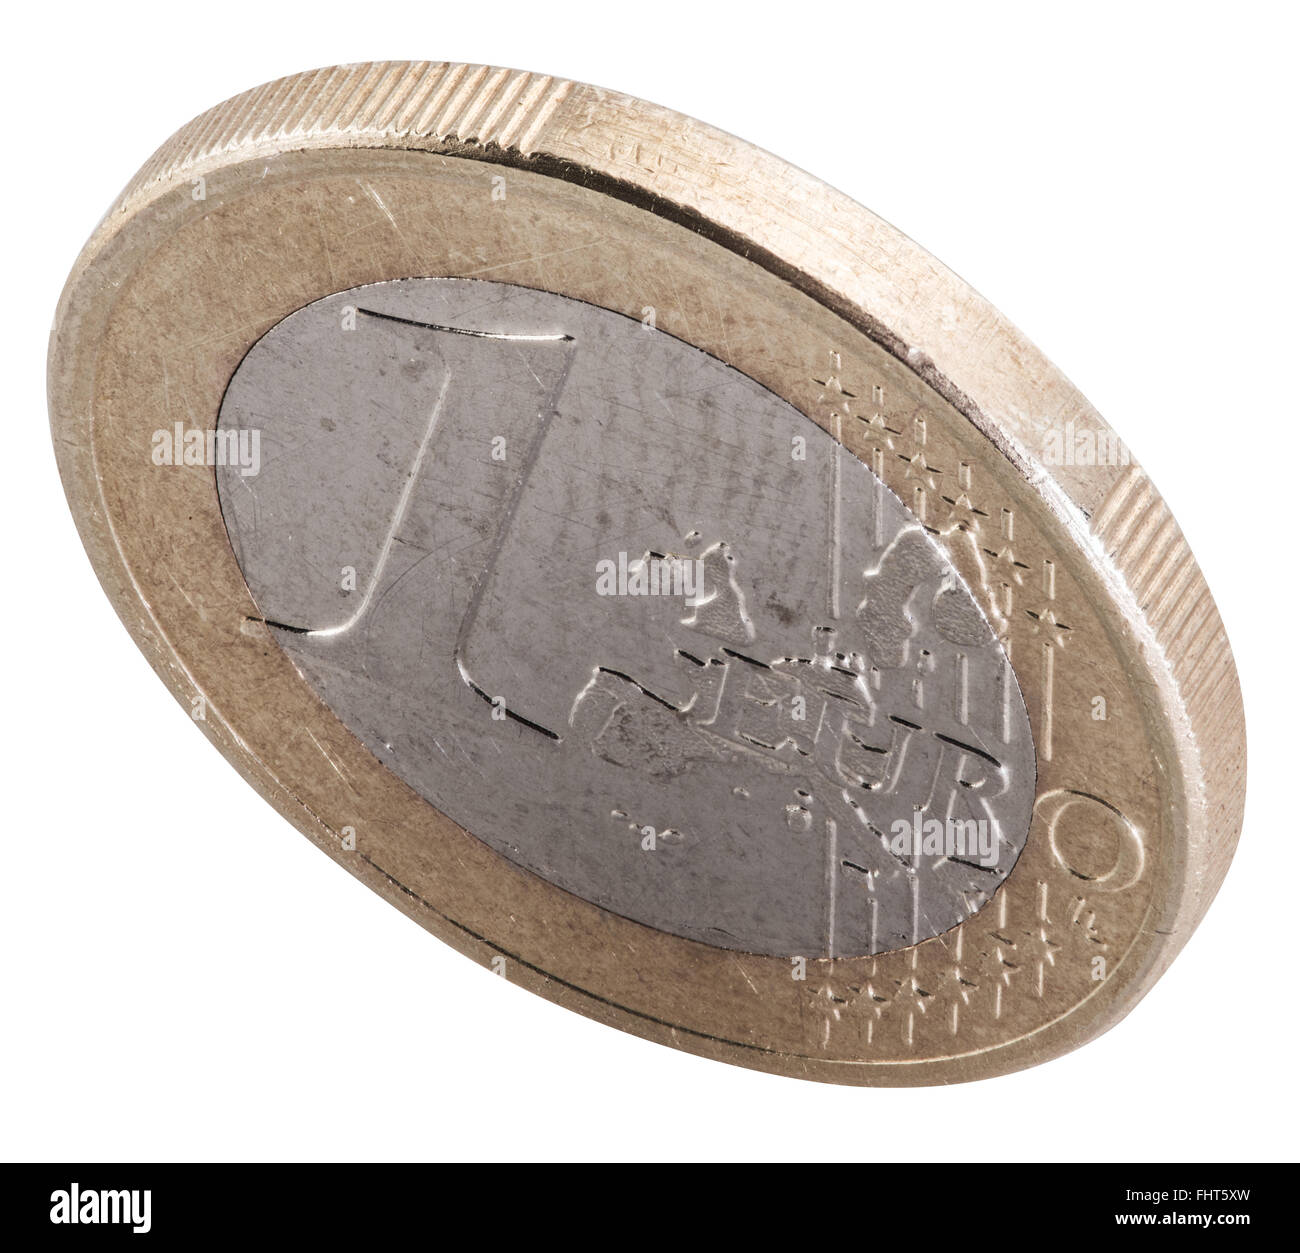 Alten ein-Euro-Münze isoliert auf einem weißen Hintergrund. Datei enthält Beschneidungspfade. Stockfoto